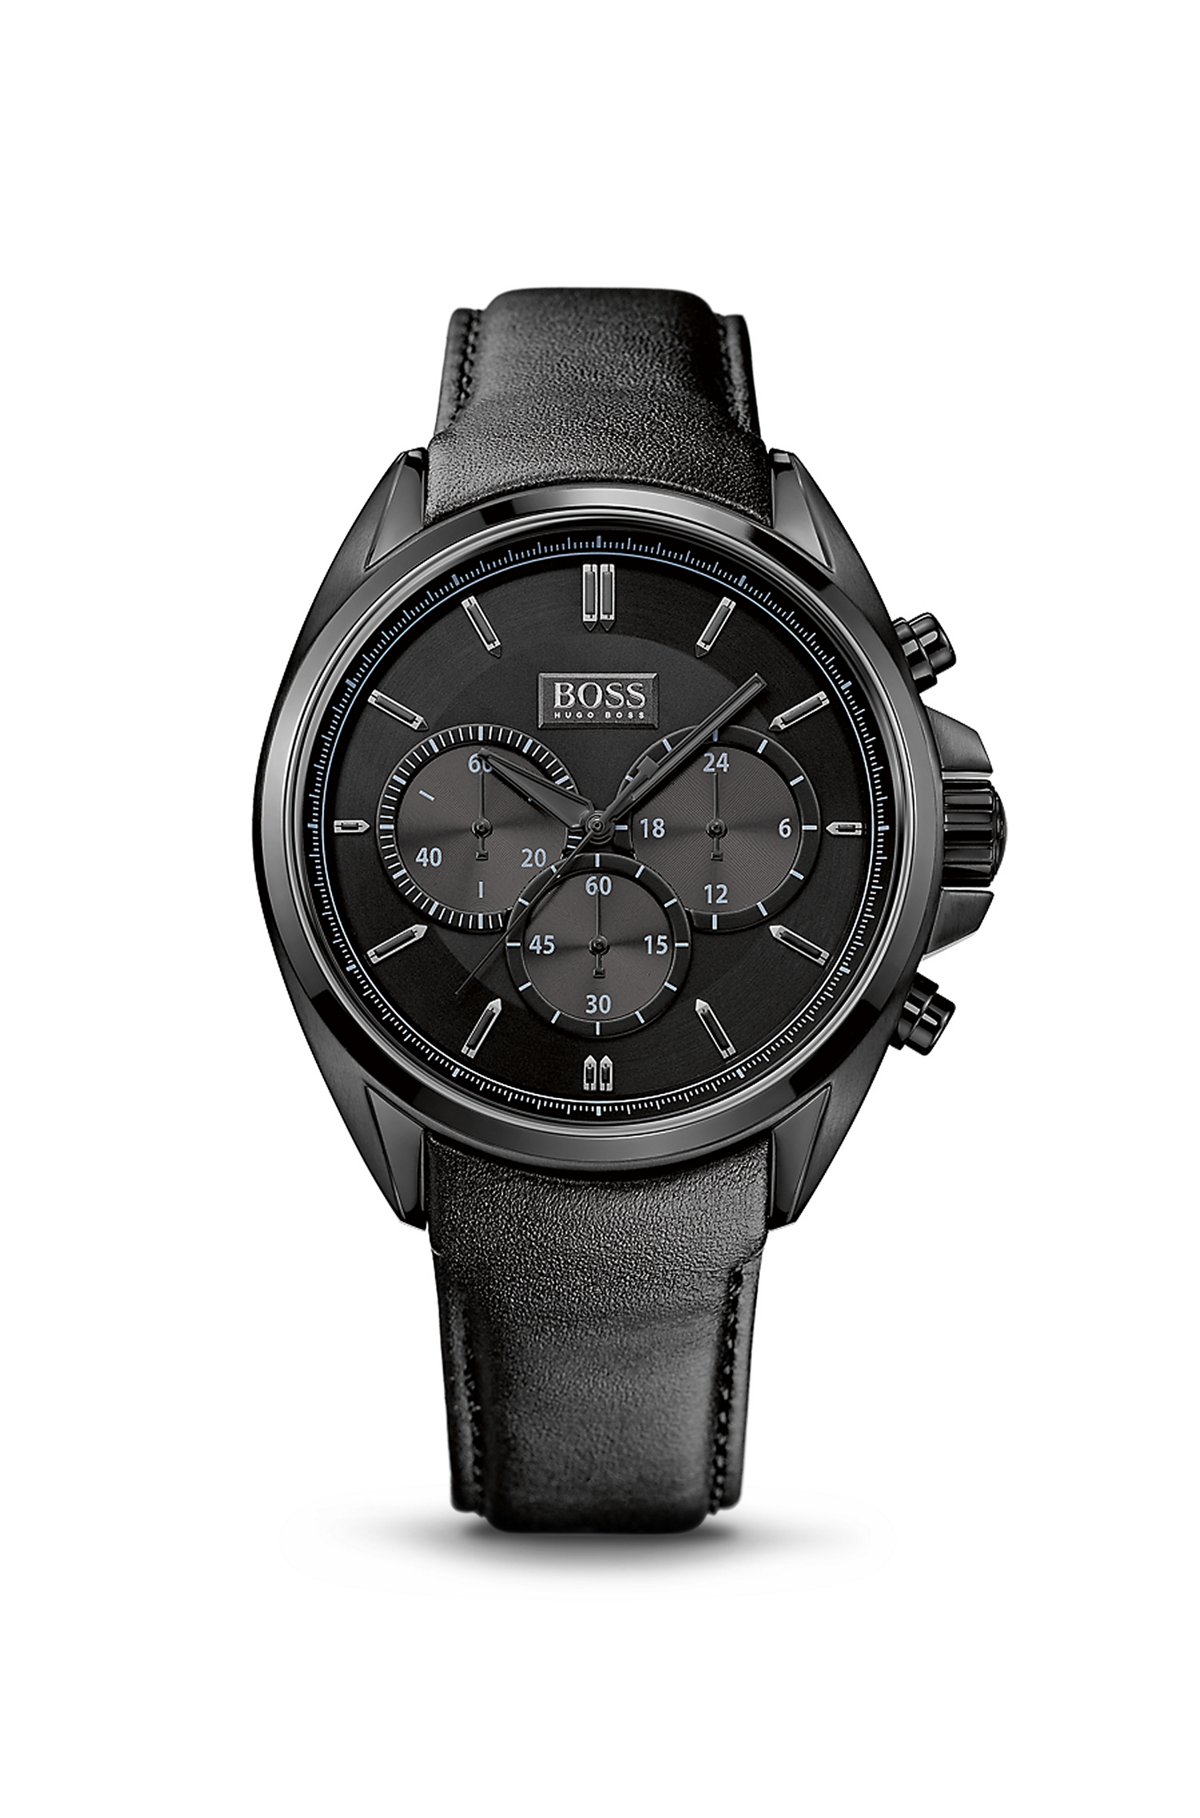 Часы хуго босс. Часы Boss Hugo Boss. Часы Хуго босс мужские. Часы Boss Hugo Boss мужские. Hugo Boss часы 508106.